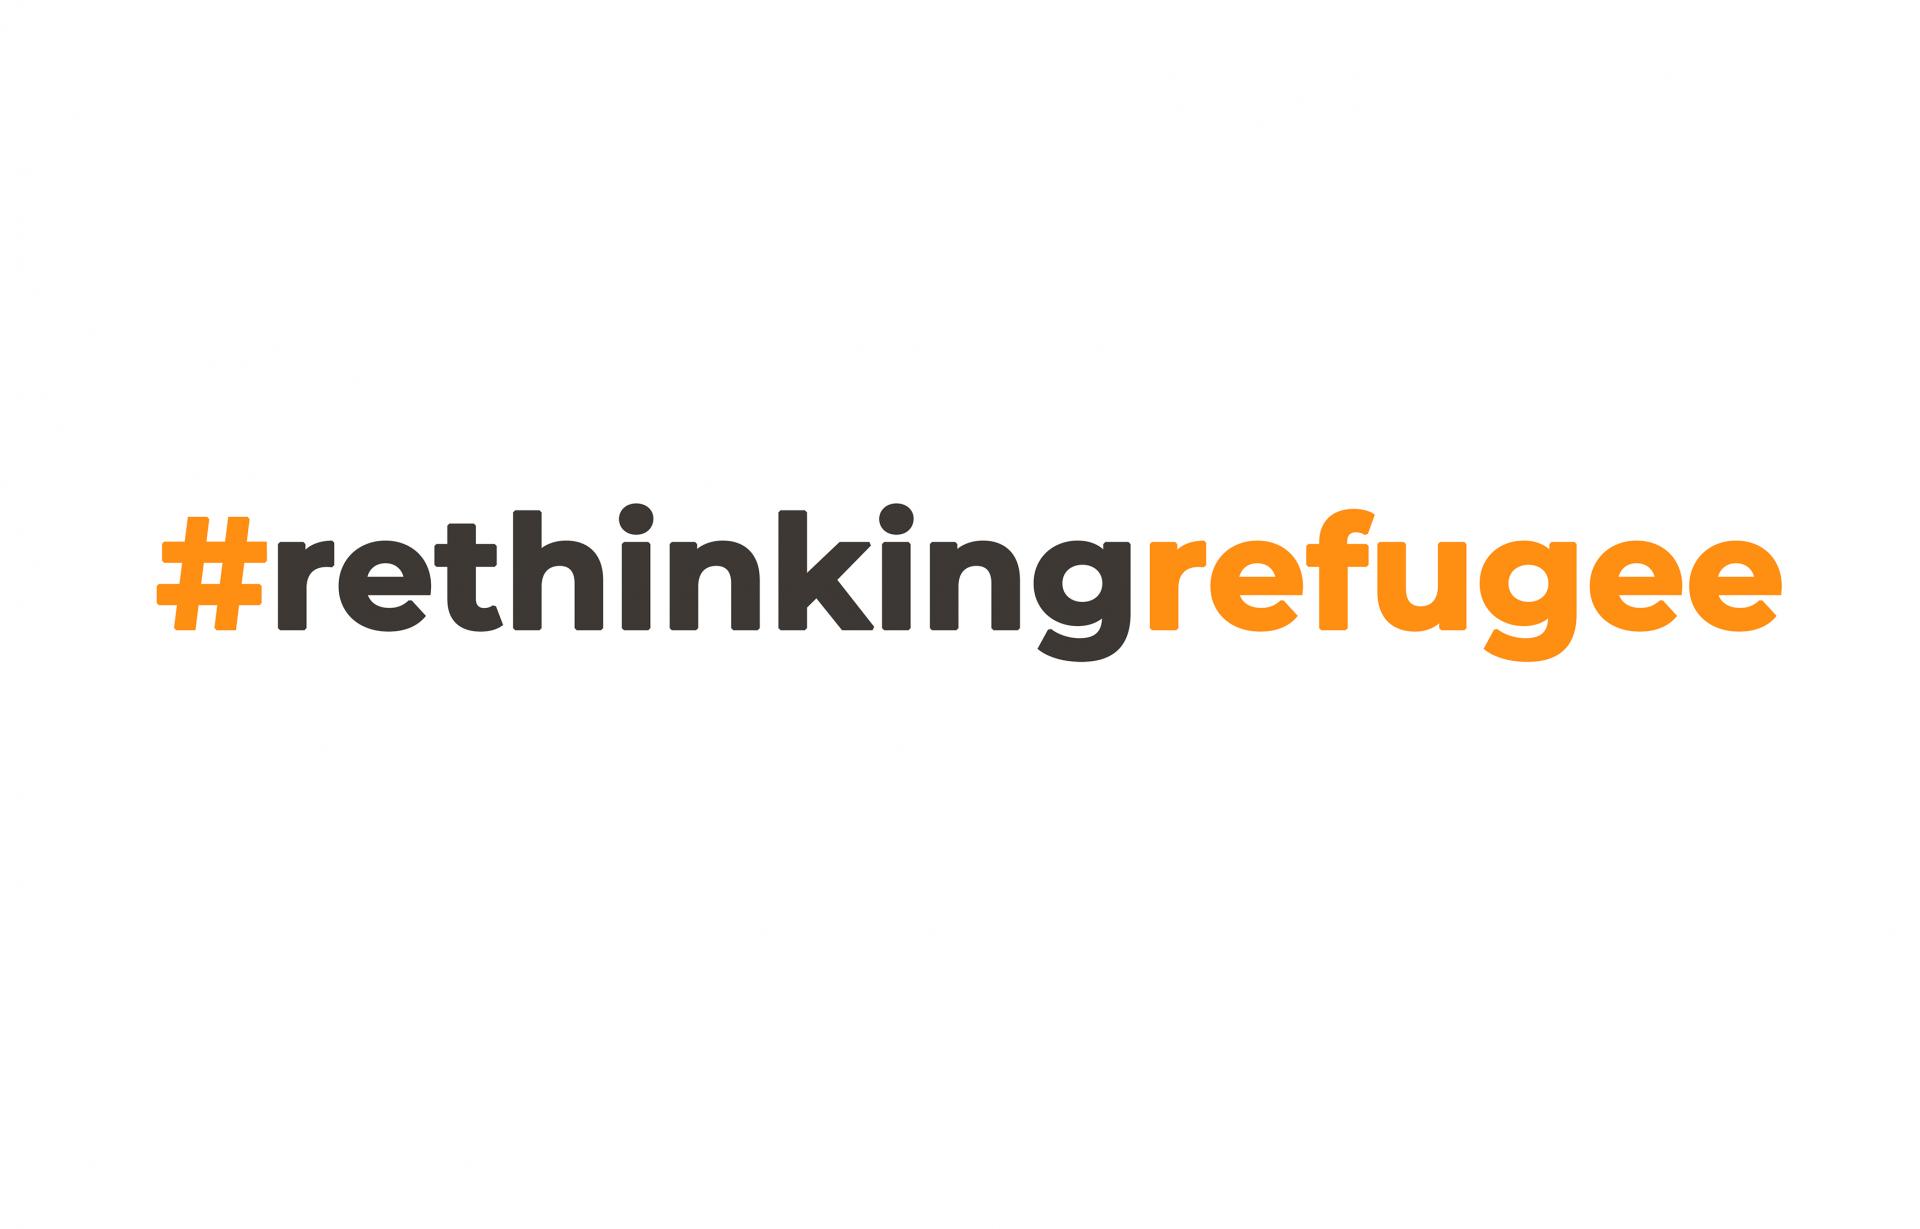 #rethinkingrefugee